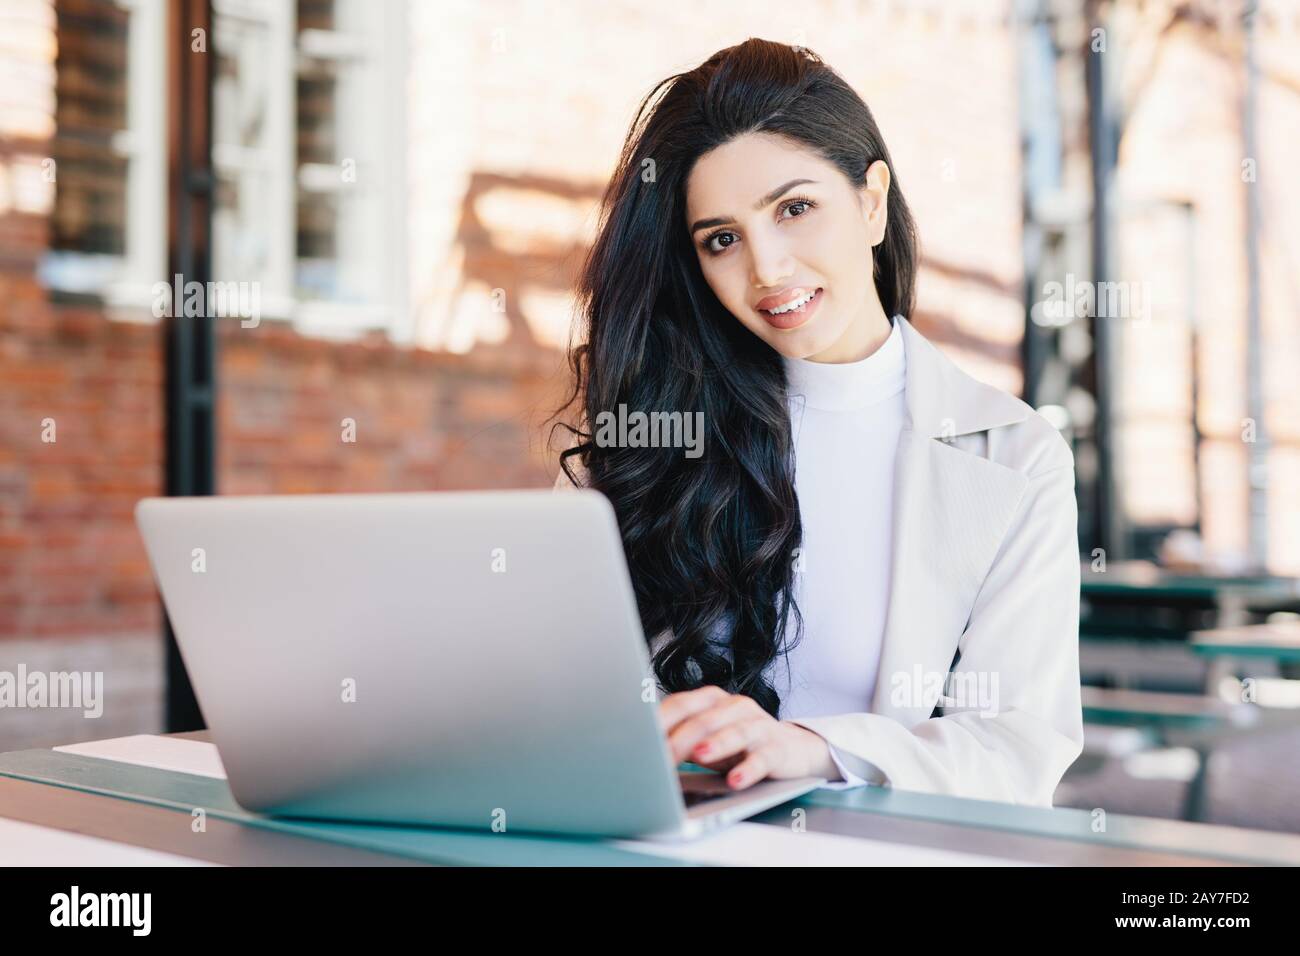 Technologie- und Kommunikationskonzept. Erfolgreiche europäische Geschäftsfrau mit wunderschönem Aussehen, die in einem Café am Laptop arbeitet und lächelt Stockfoto